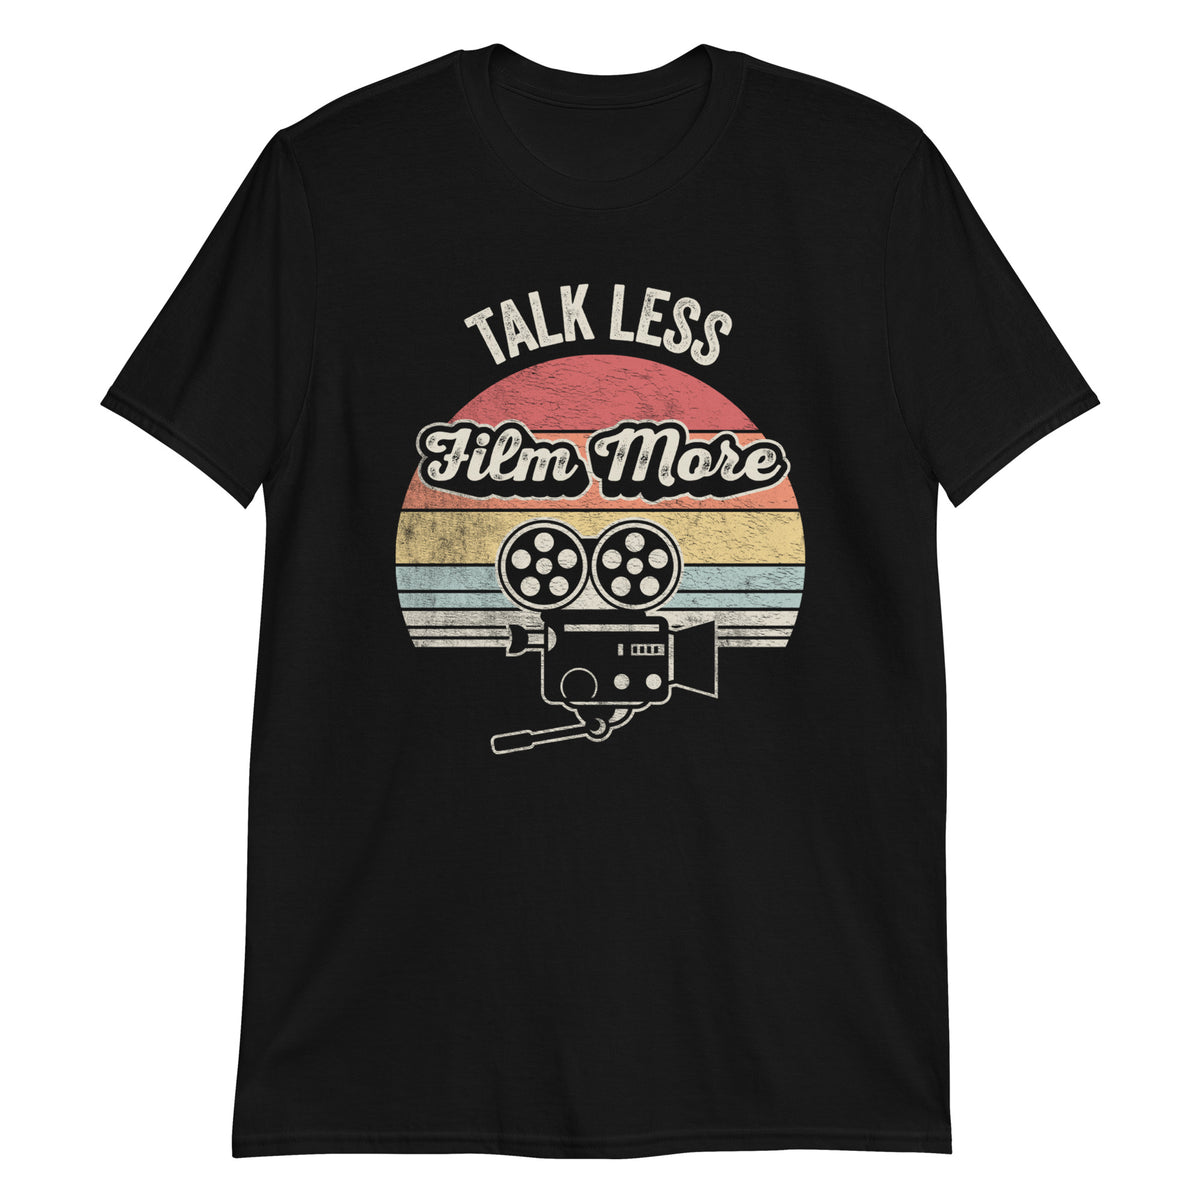 Talk Less Film More T-Shirt